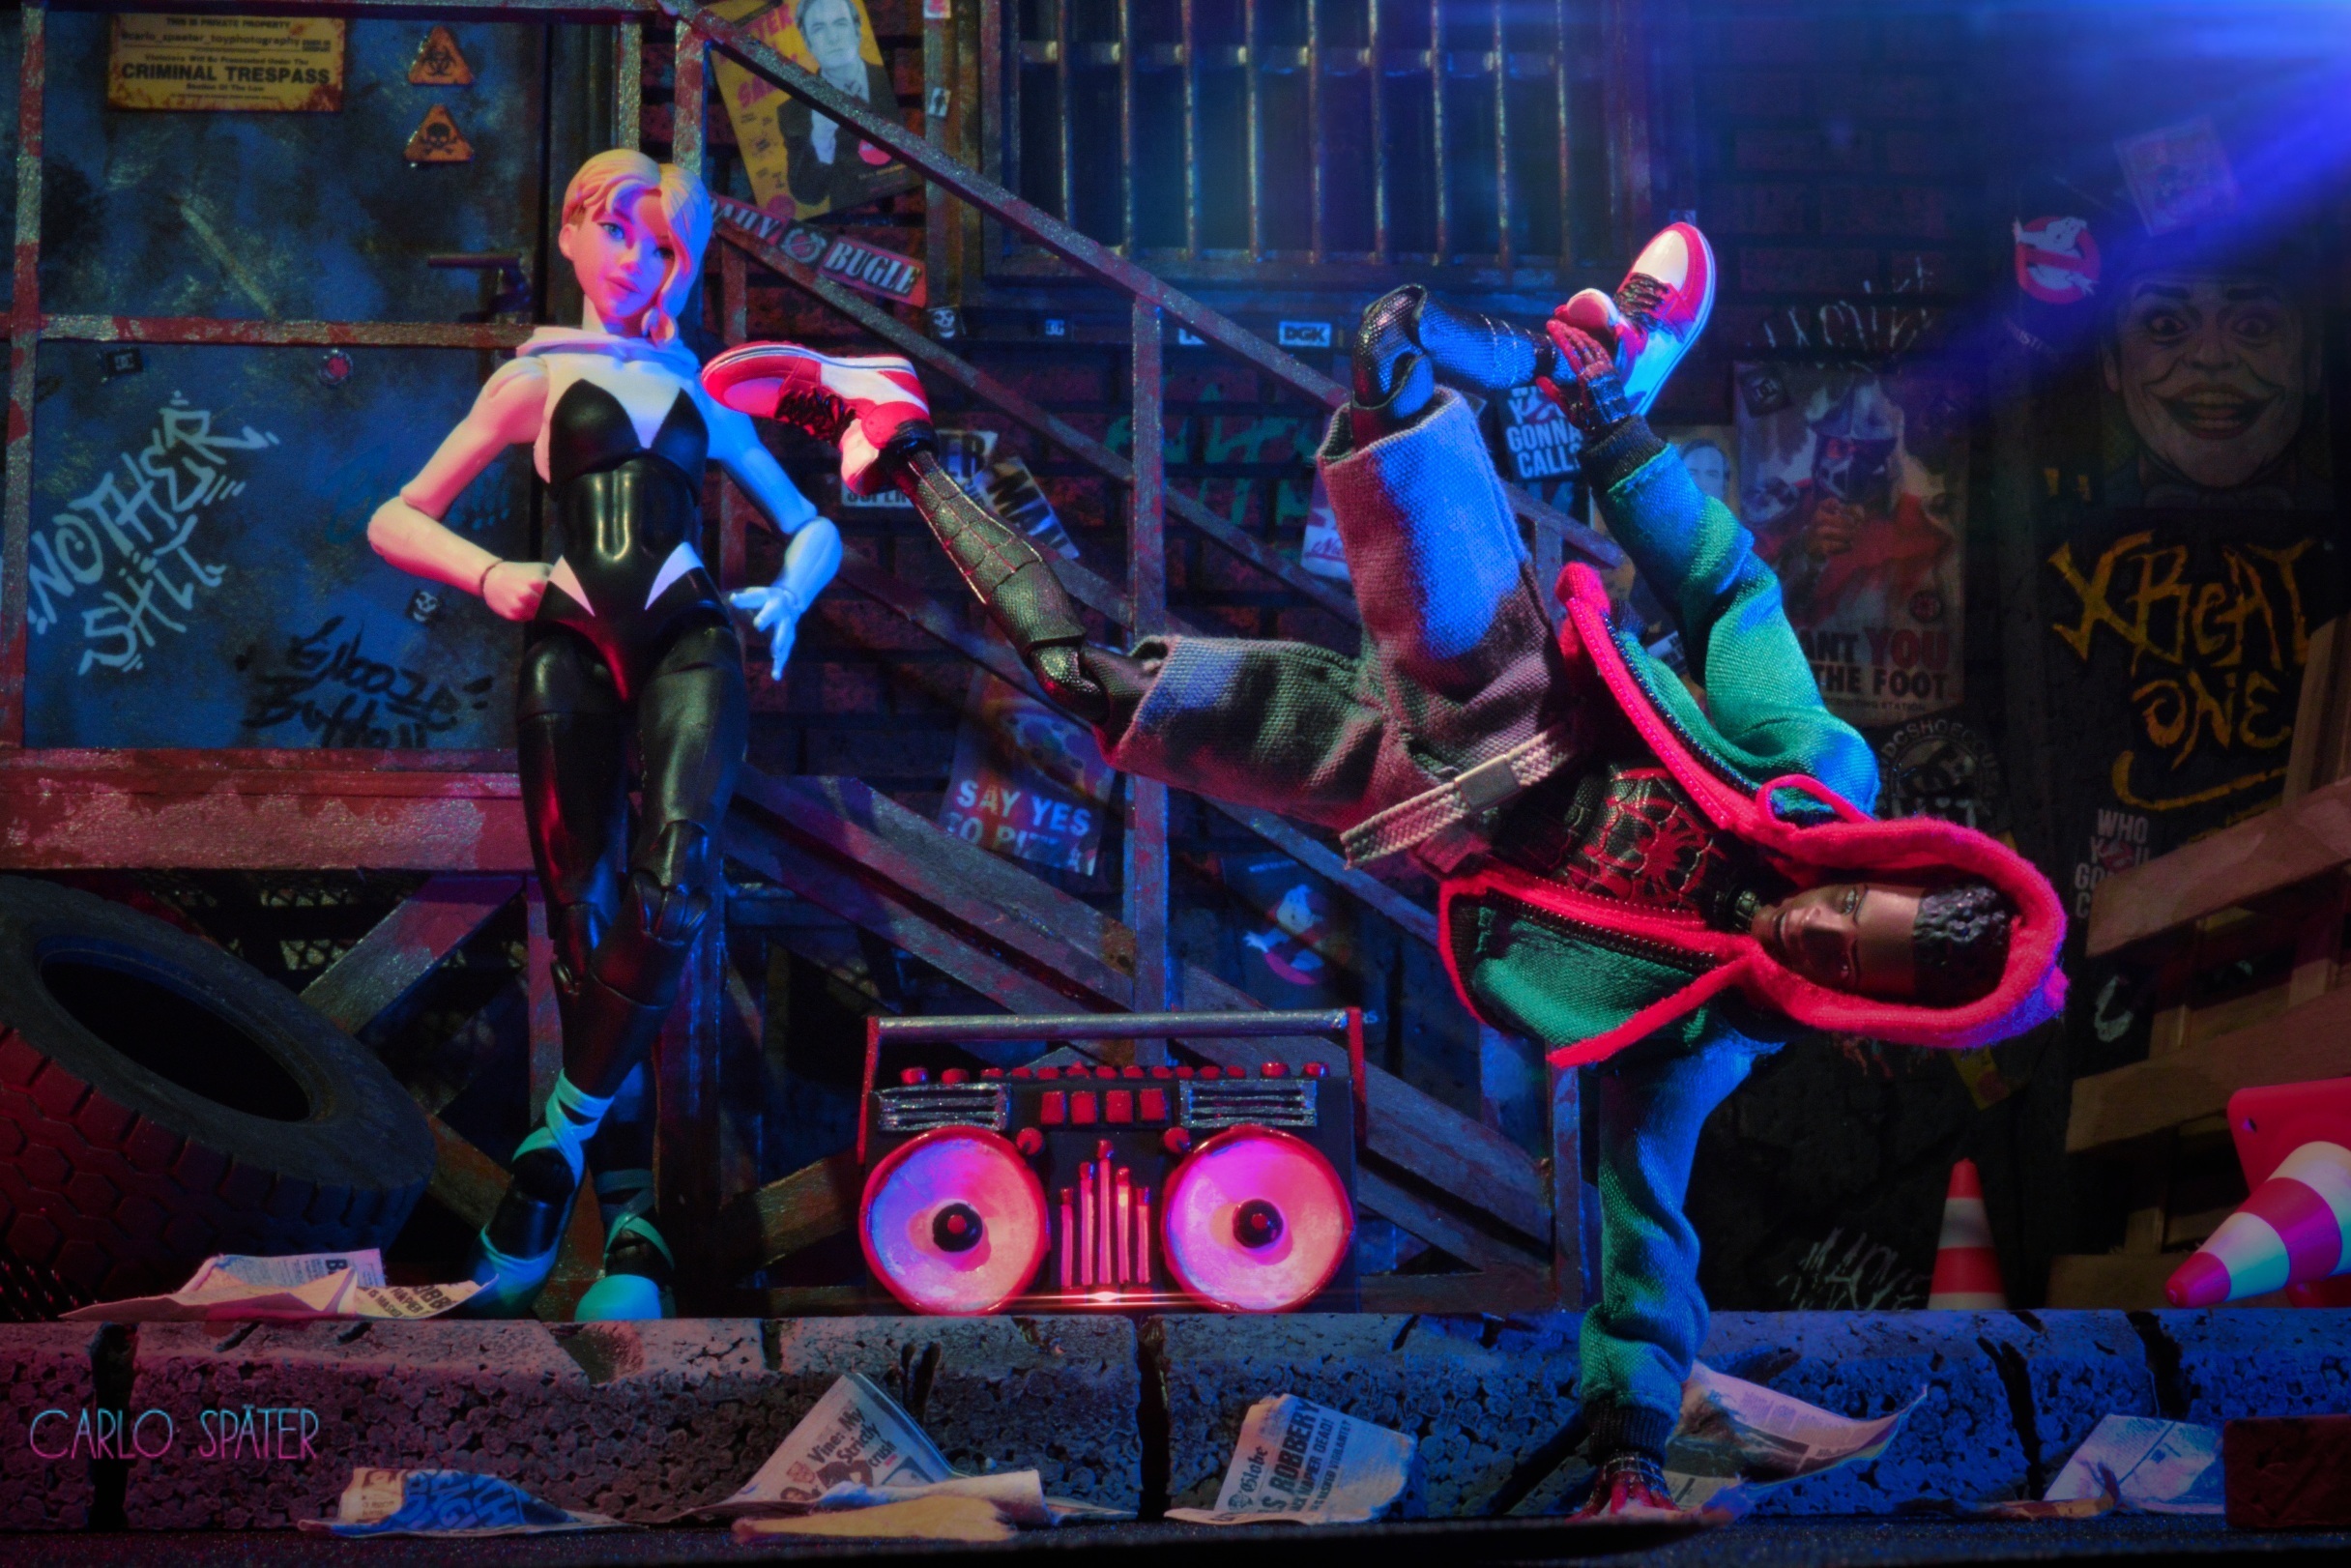 Miles Morales als Spider-Man und Gwen Stacy als Actionfiguren in Szene gesetzt (c) Carlo Später Toyphotography